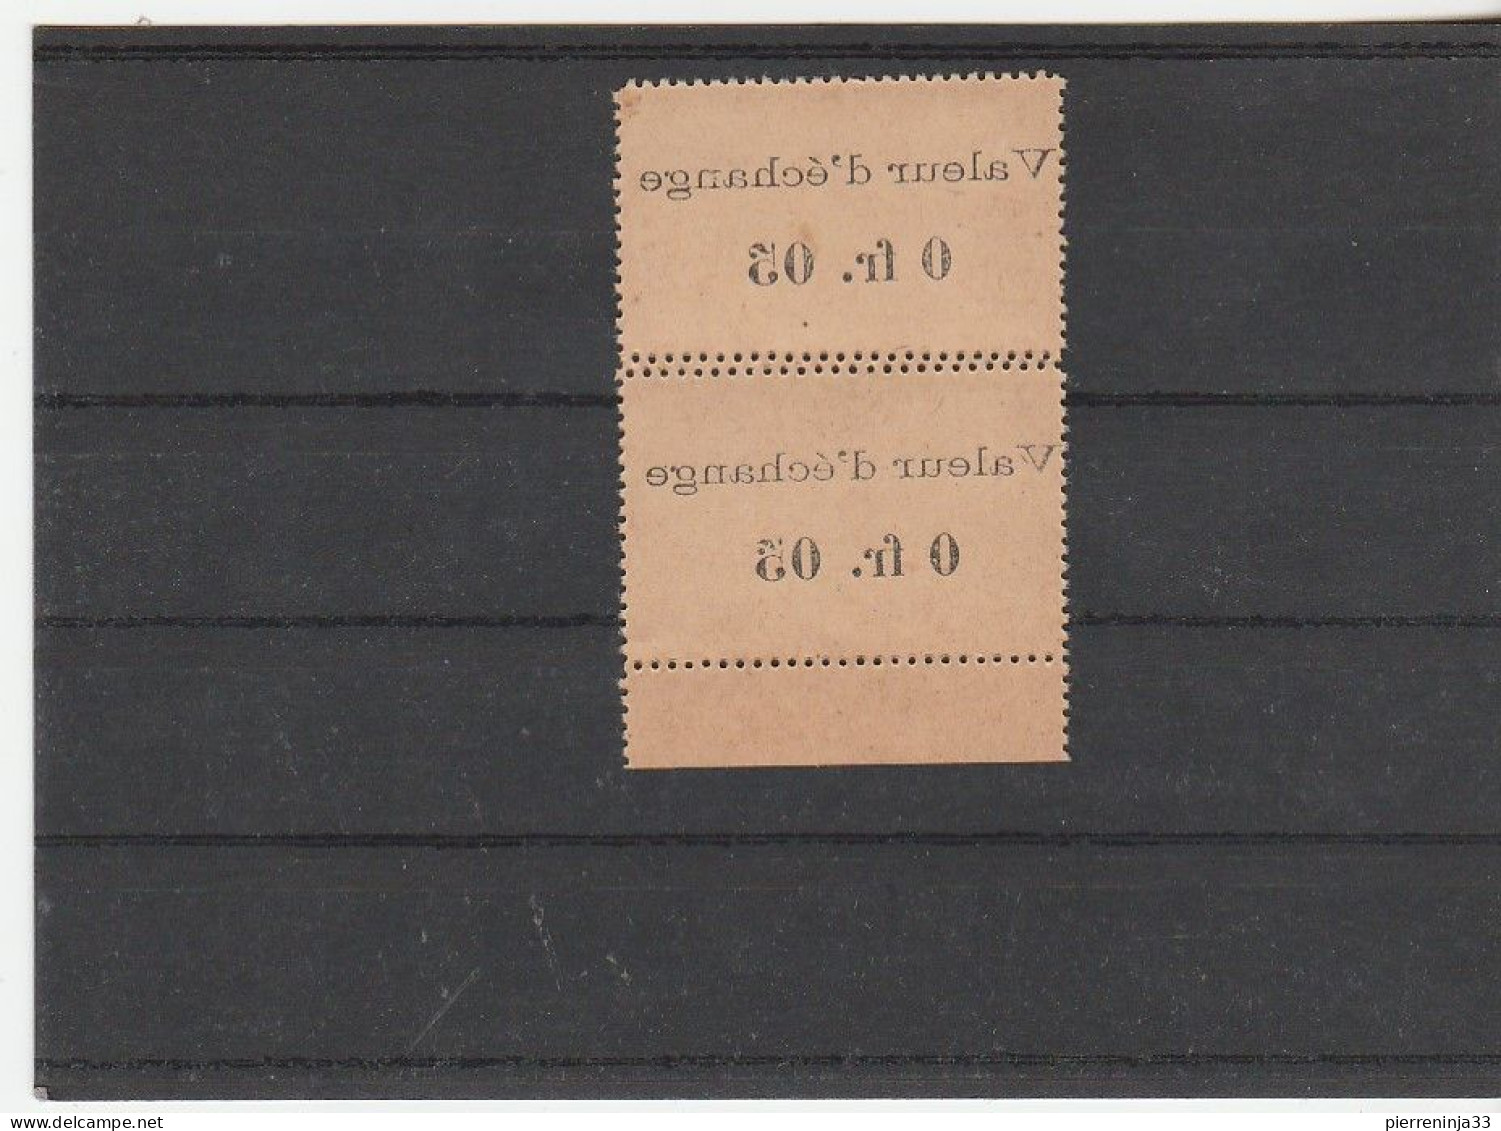 Rare Paire Timbres-Monnaie Précurseurs /Côte D'Ivoire N°44 Surchargés "Valeur D'Echange..." + Variété De Dentelure - Unused Stamps